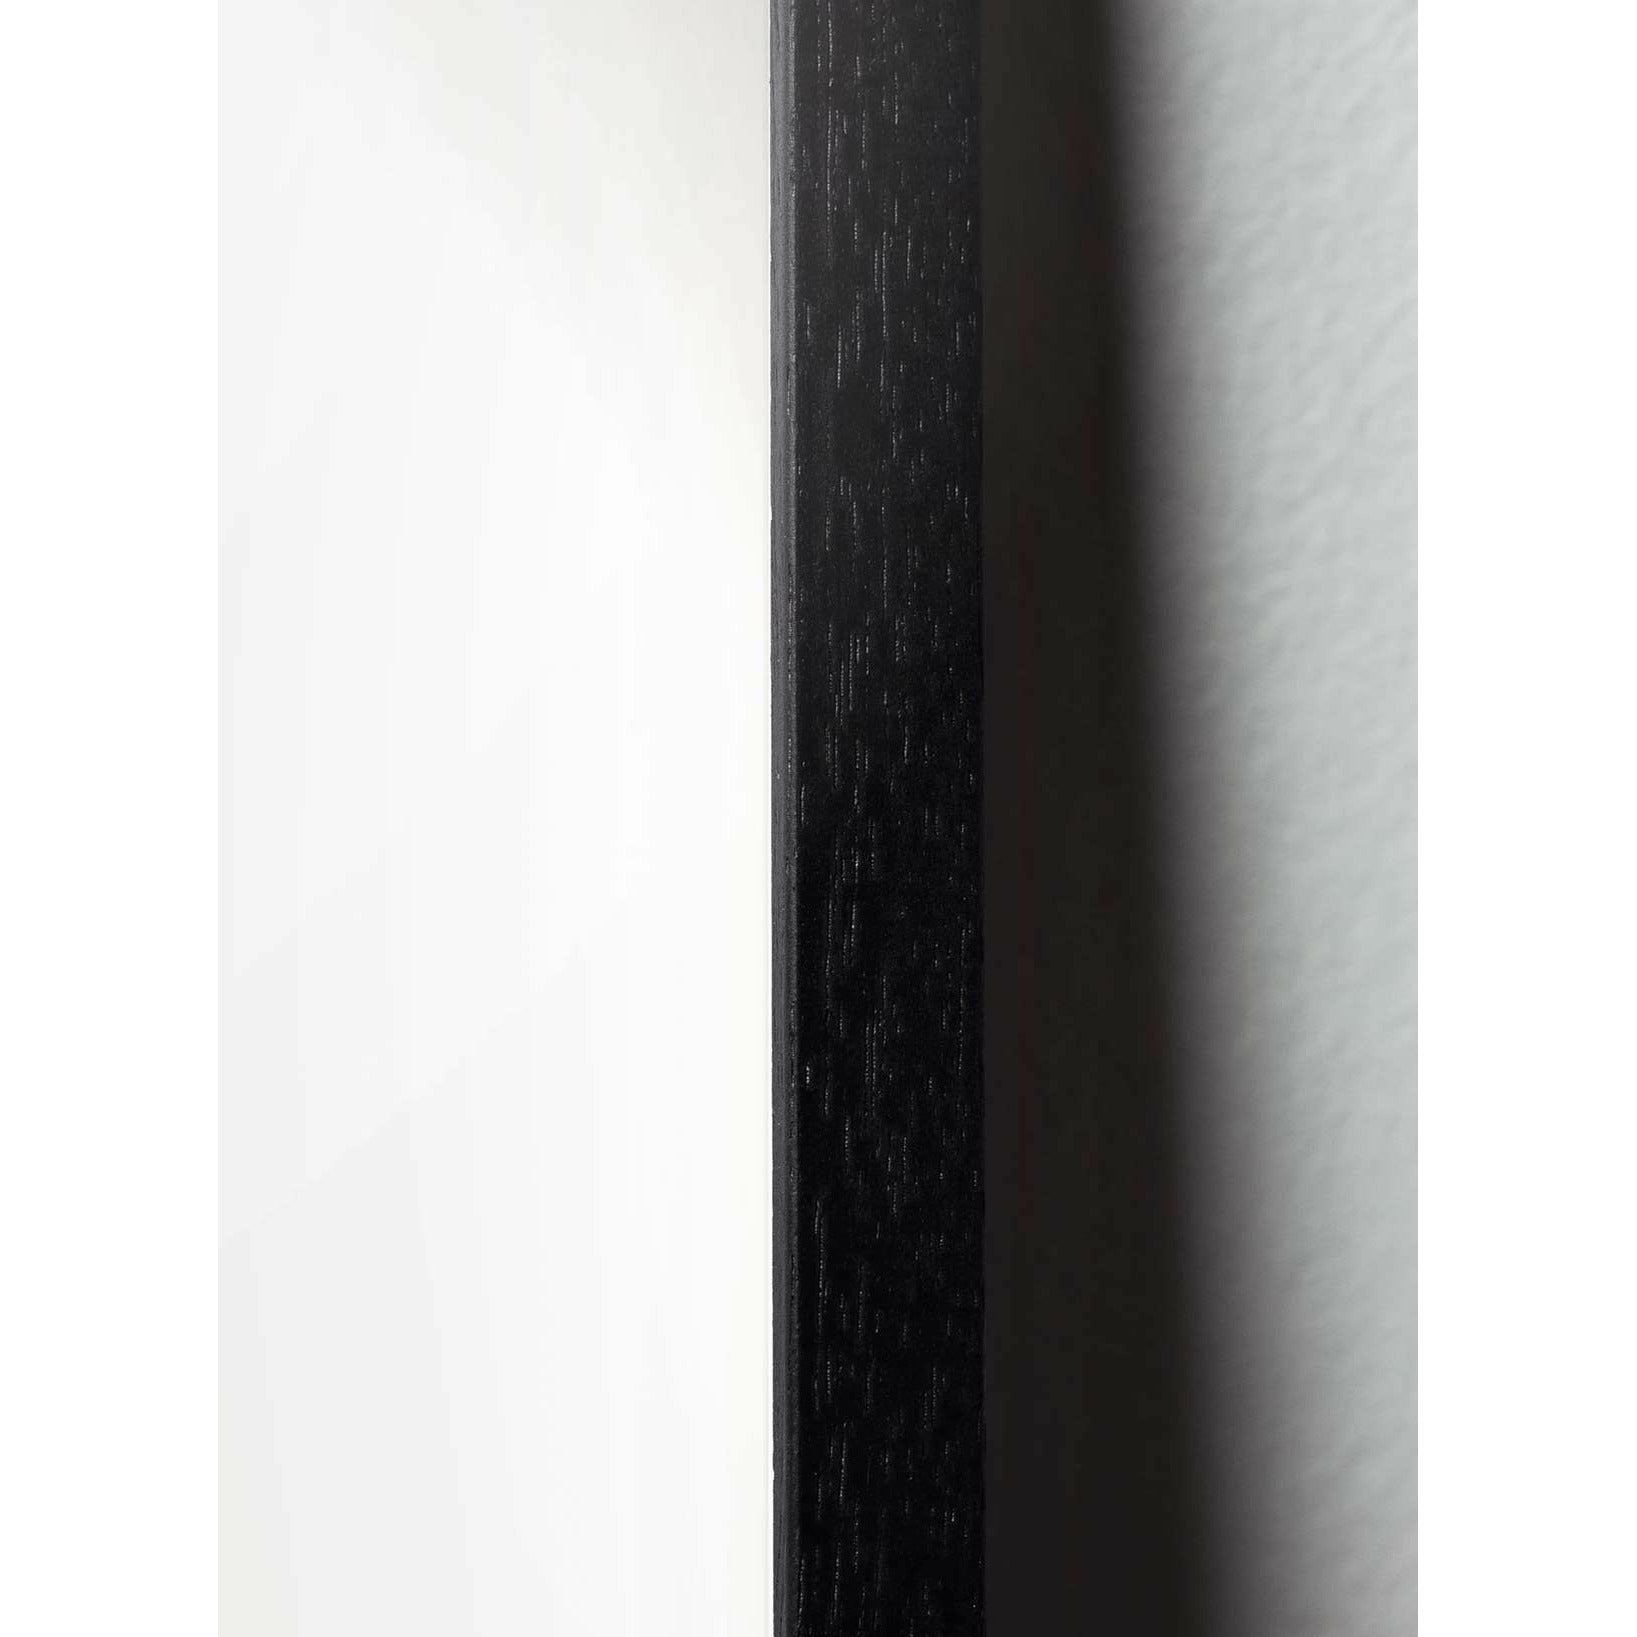 Brainchild Schneeglöckchen Design Icon Poster, Rahmen aus schwarz lackiertem Holz 70 X100 cm, grau